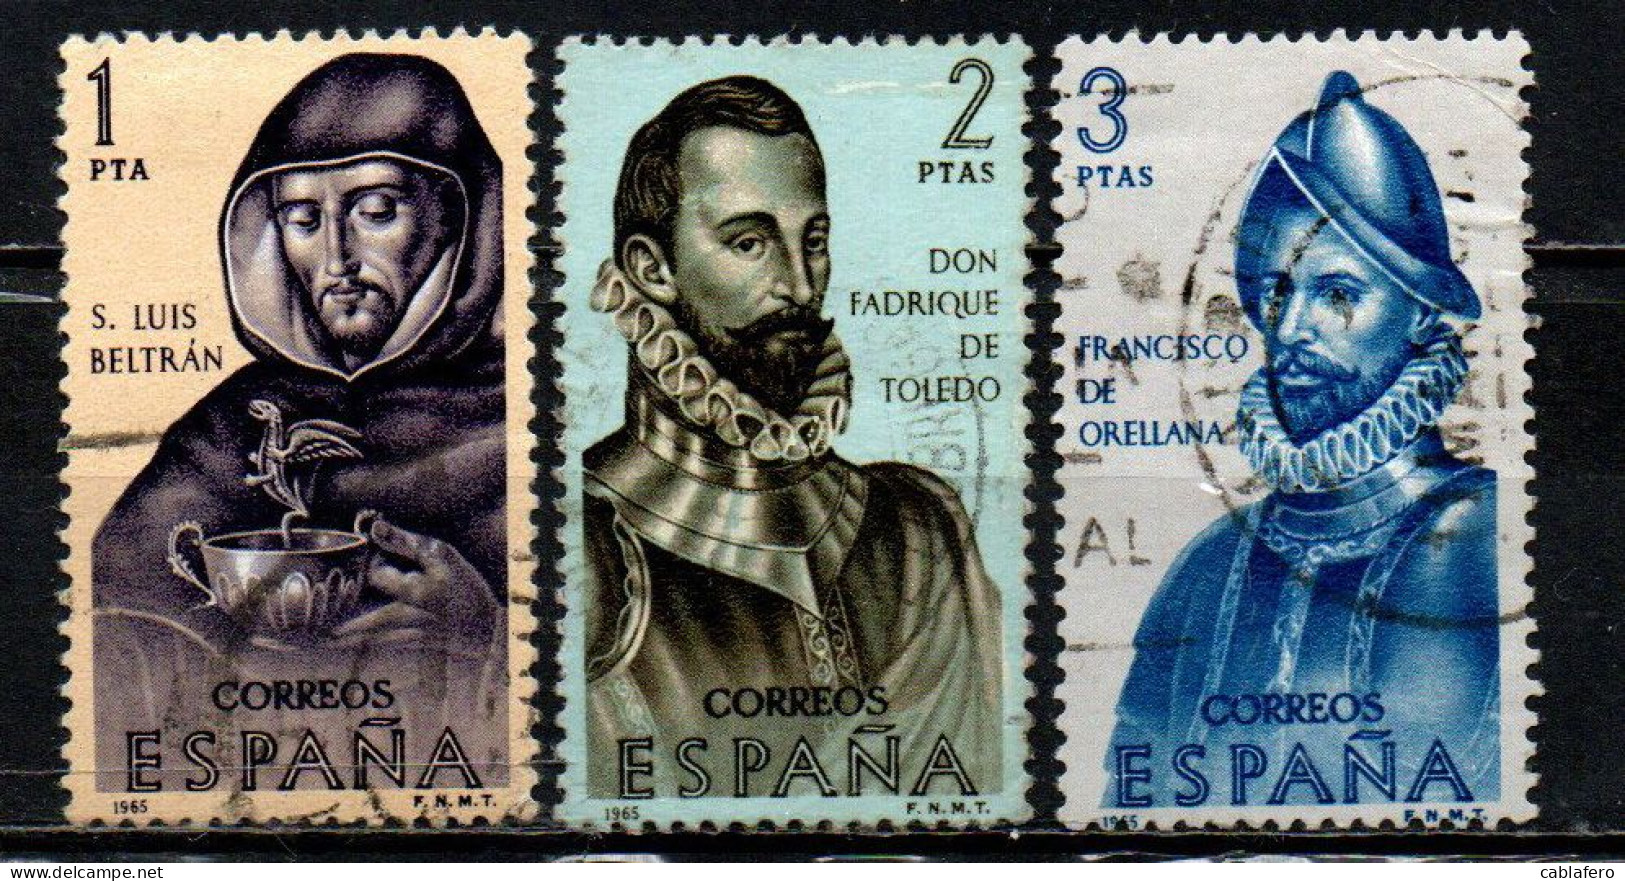 SPAGNA - 1965 - CONQUISTATORI DELL'AMERICA - S. LUIS BELTRAN, DON FABRIQUE DE TOLEDO, FRANCISCO DE ORELLANA - USATI - Used Stamps